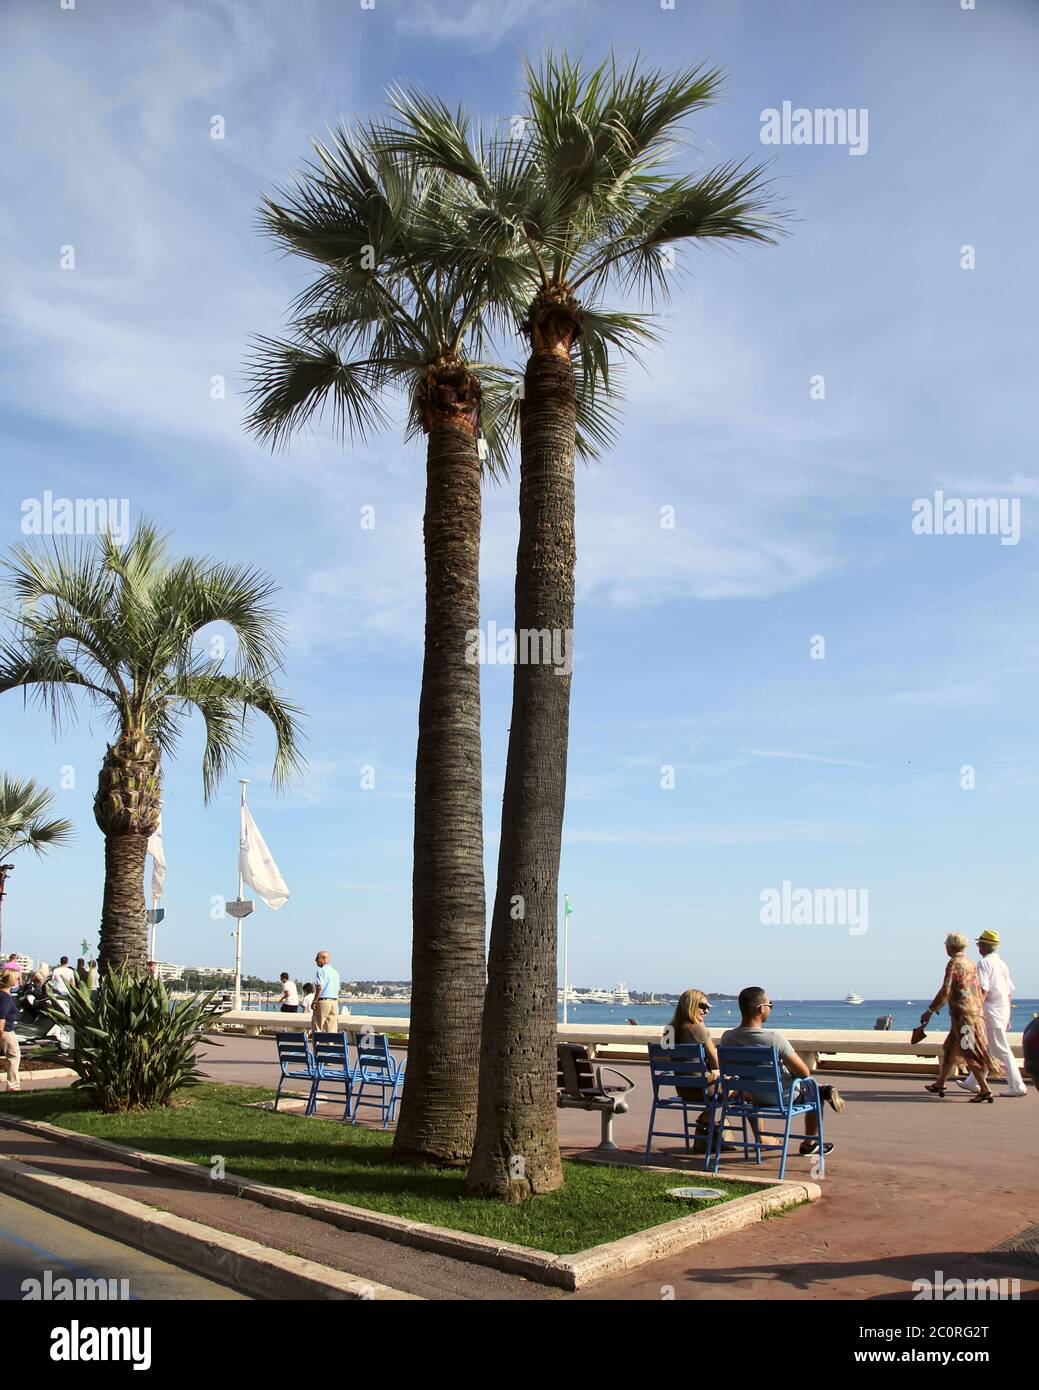 CANNES, FRANCE - 5 JUILLET 2014. Palmiers sur la Croisette à Cannes. Cannes situé sur la Côte d'Azur. La ville est fa Banque D'Images